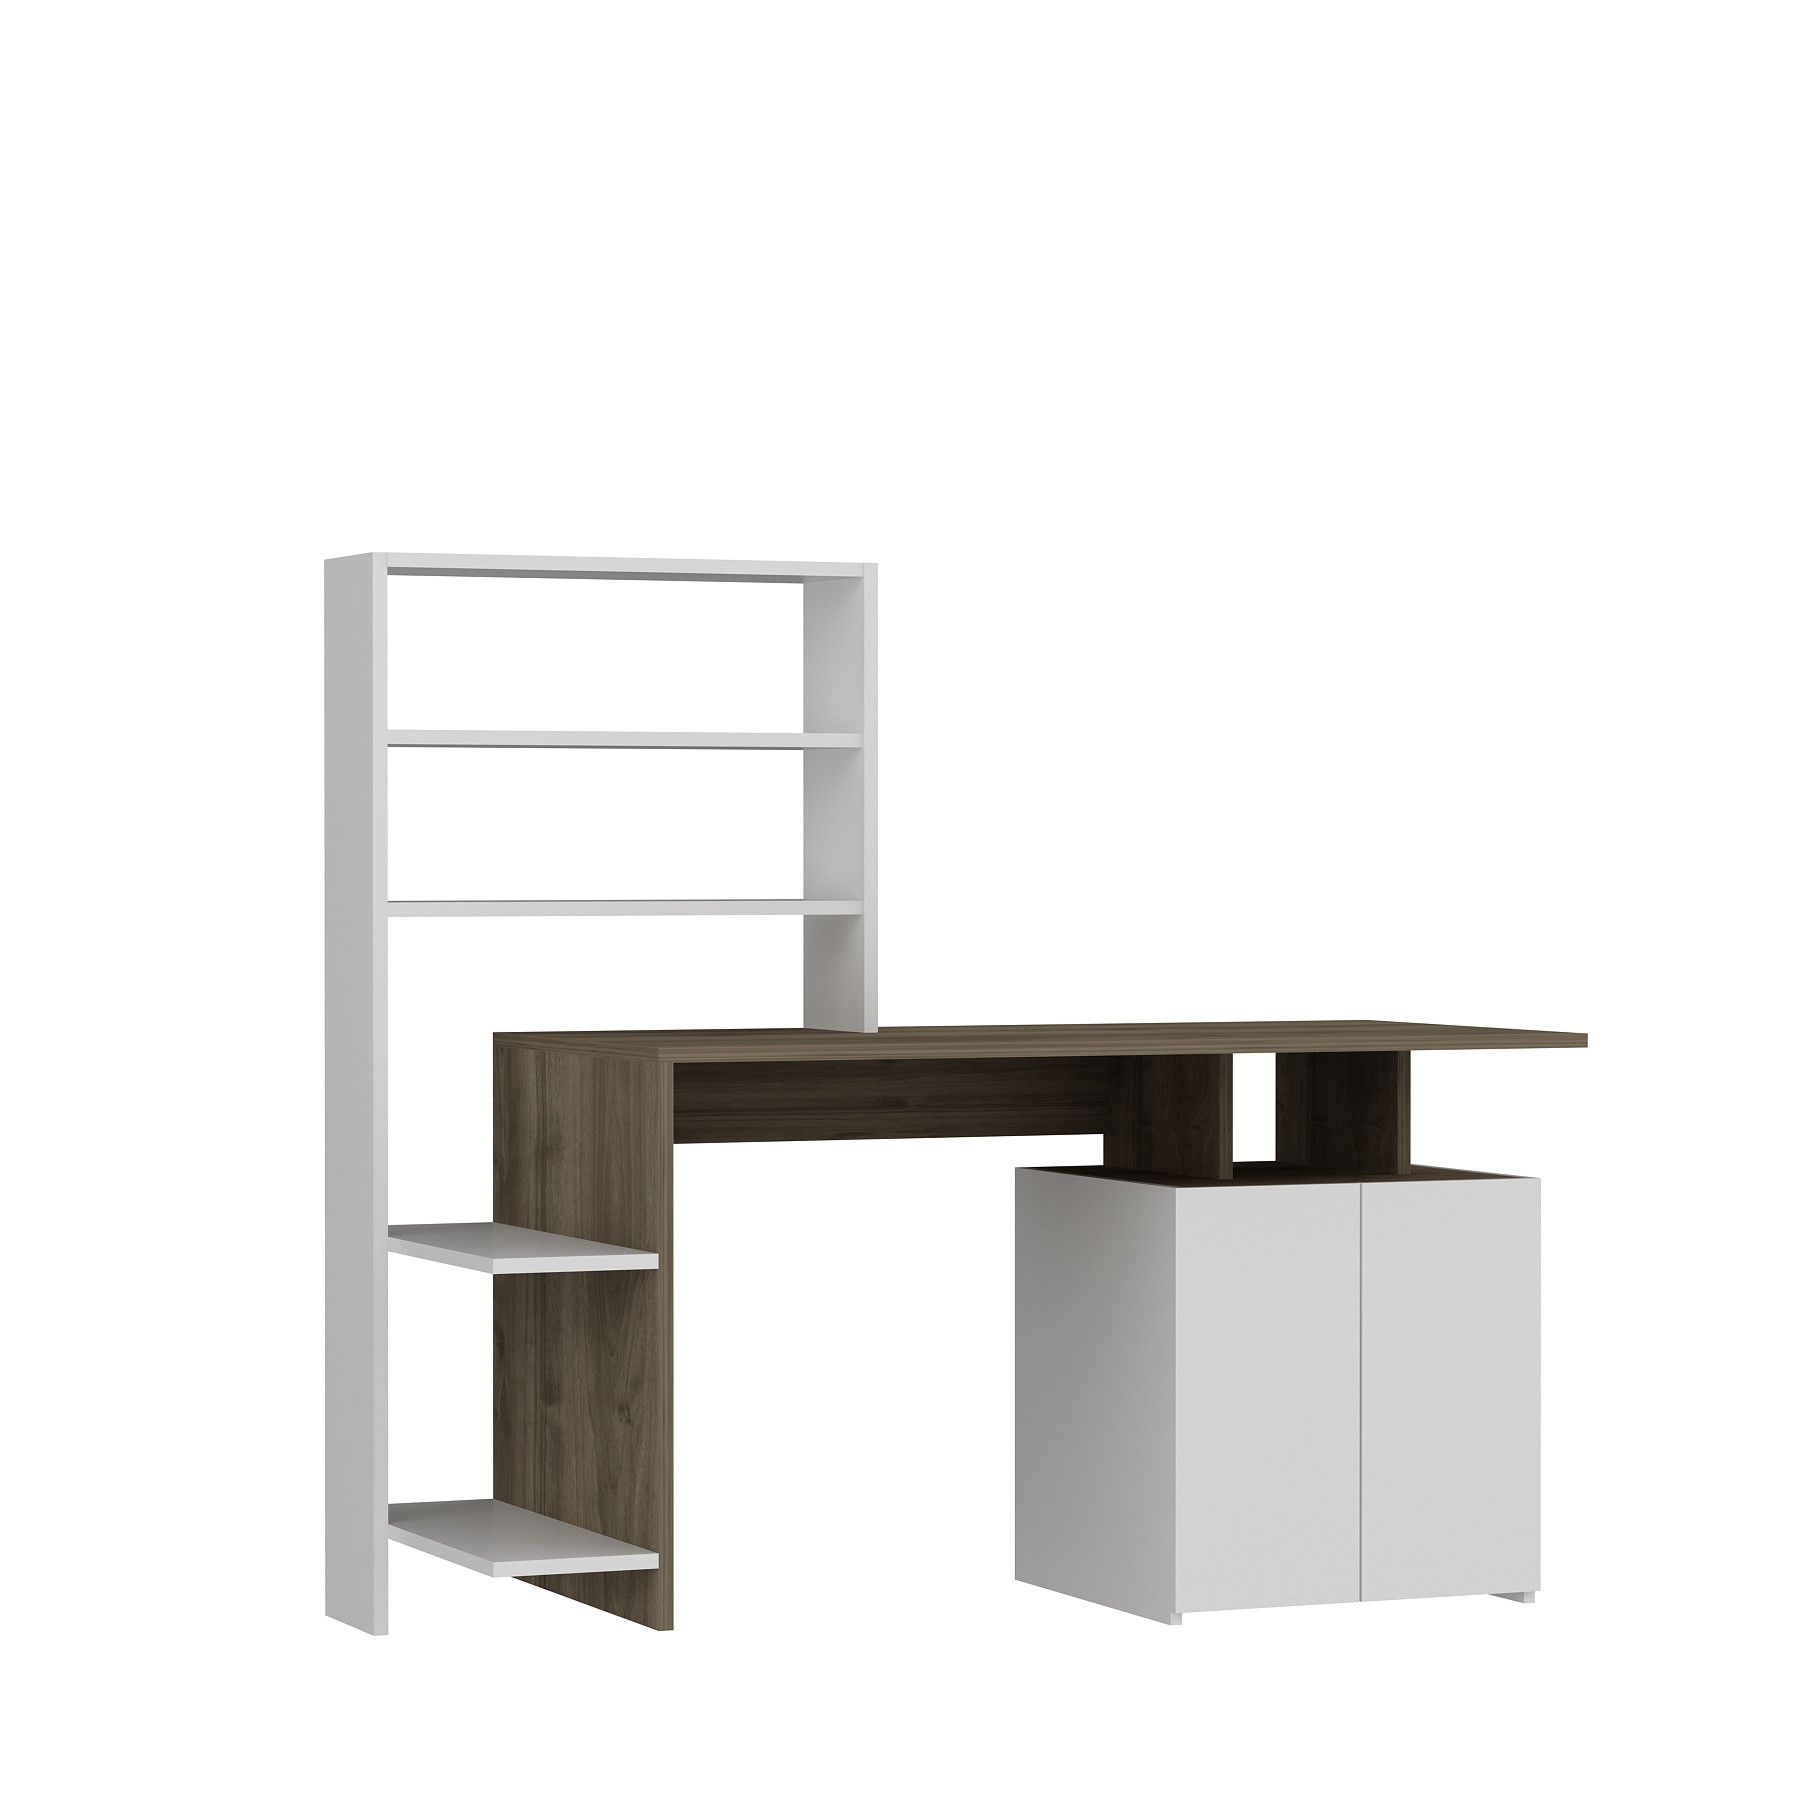 Kasini Desk, armadio e scaffale in legno naturale e bianco